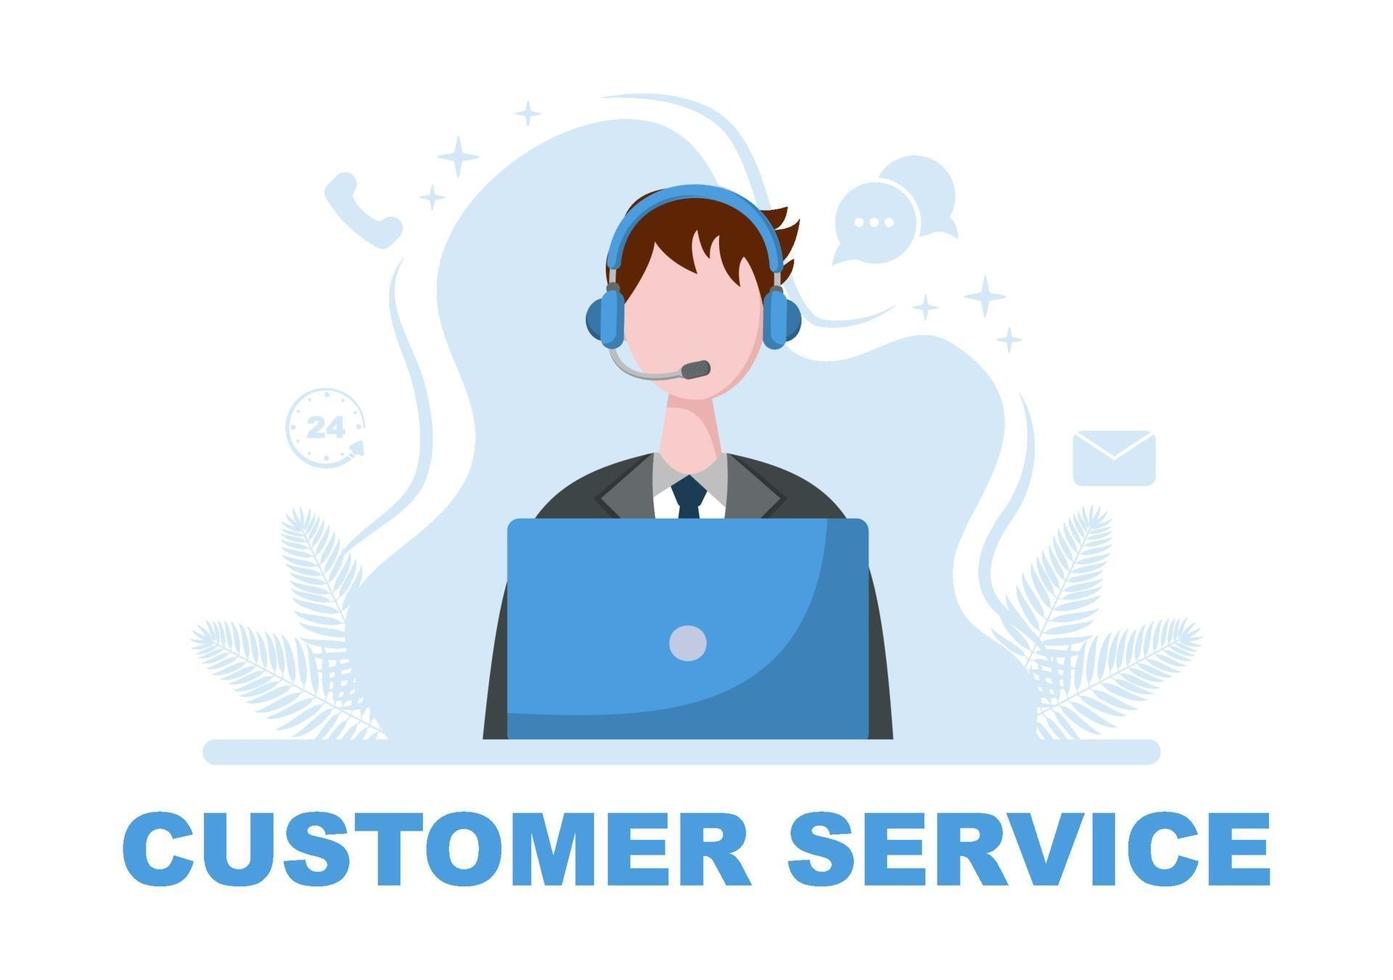 contáctenos servicio al cliente para servicio de asistente personal, asesor personal y red social. ilustración vectorial vector